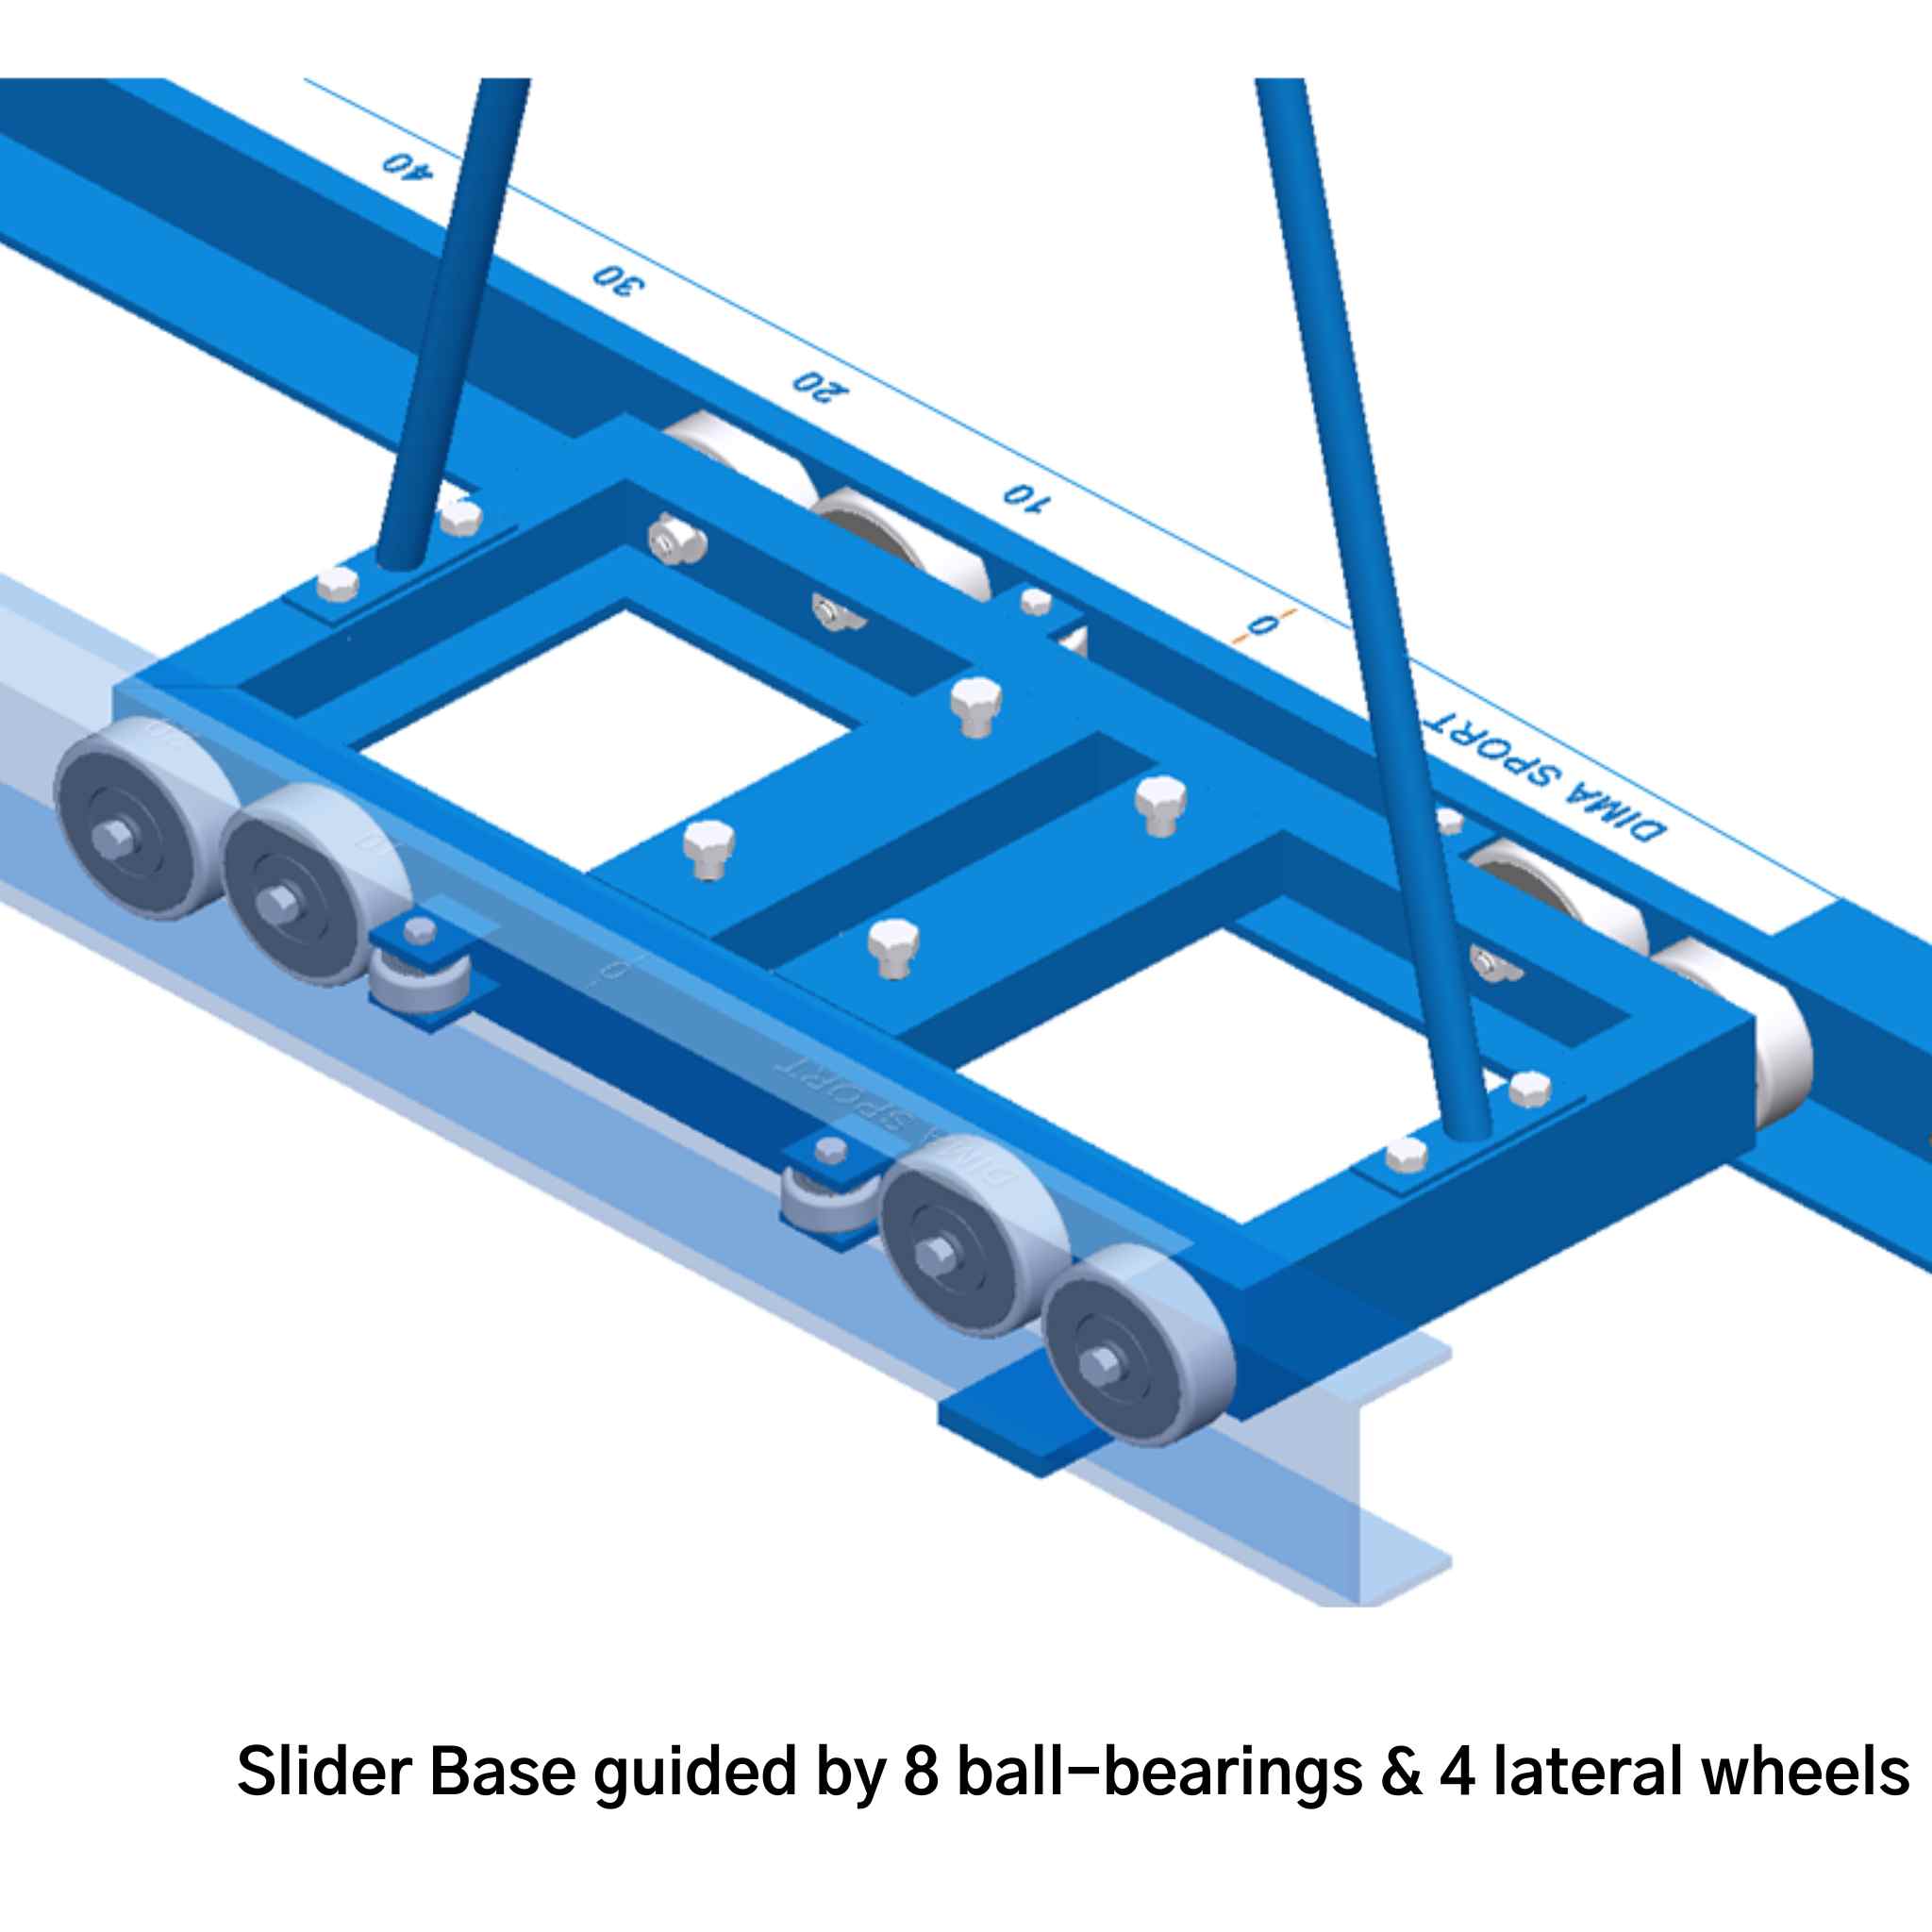 DIMA Pole Vault Base rails | ball bearings and wheels